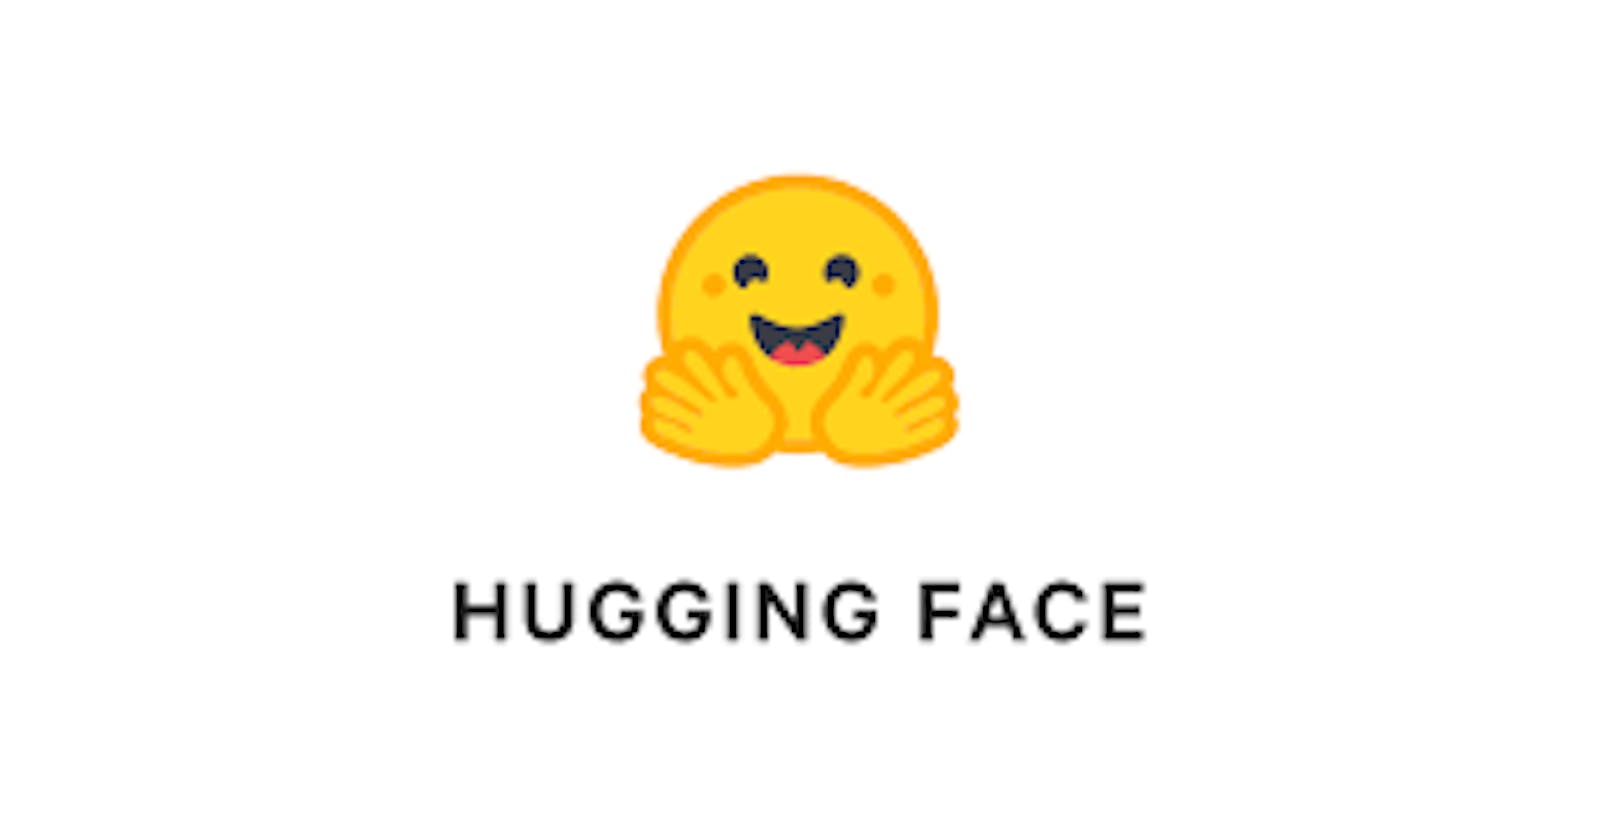 Text Summarization App using Hugging Face 🤗